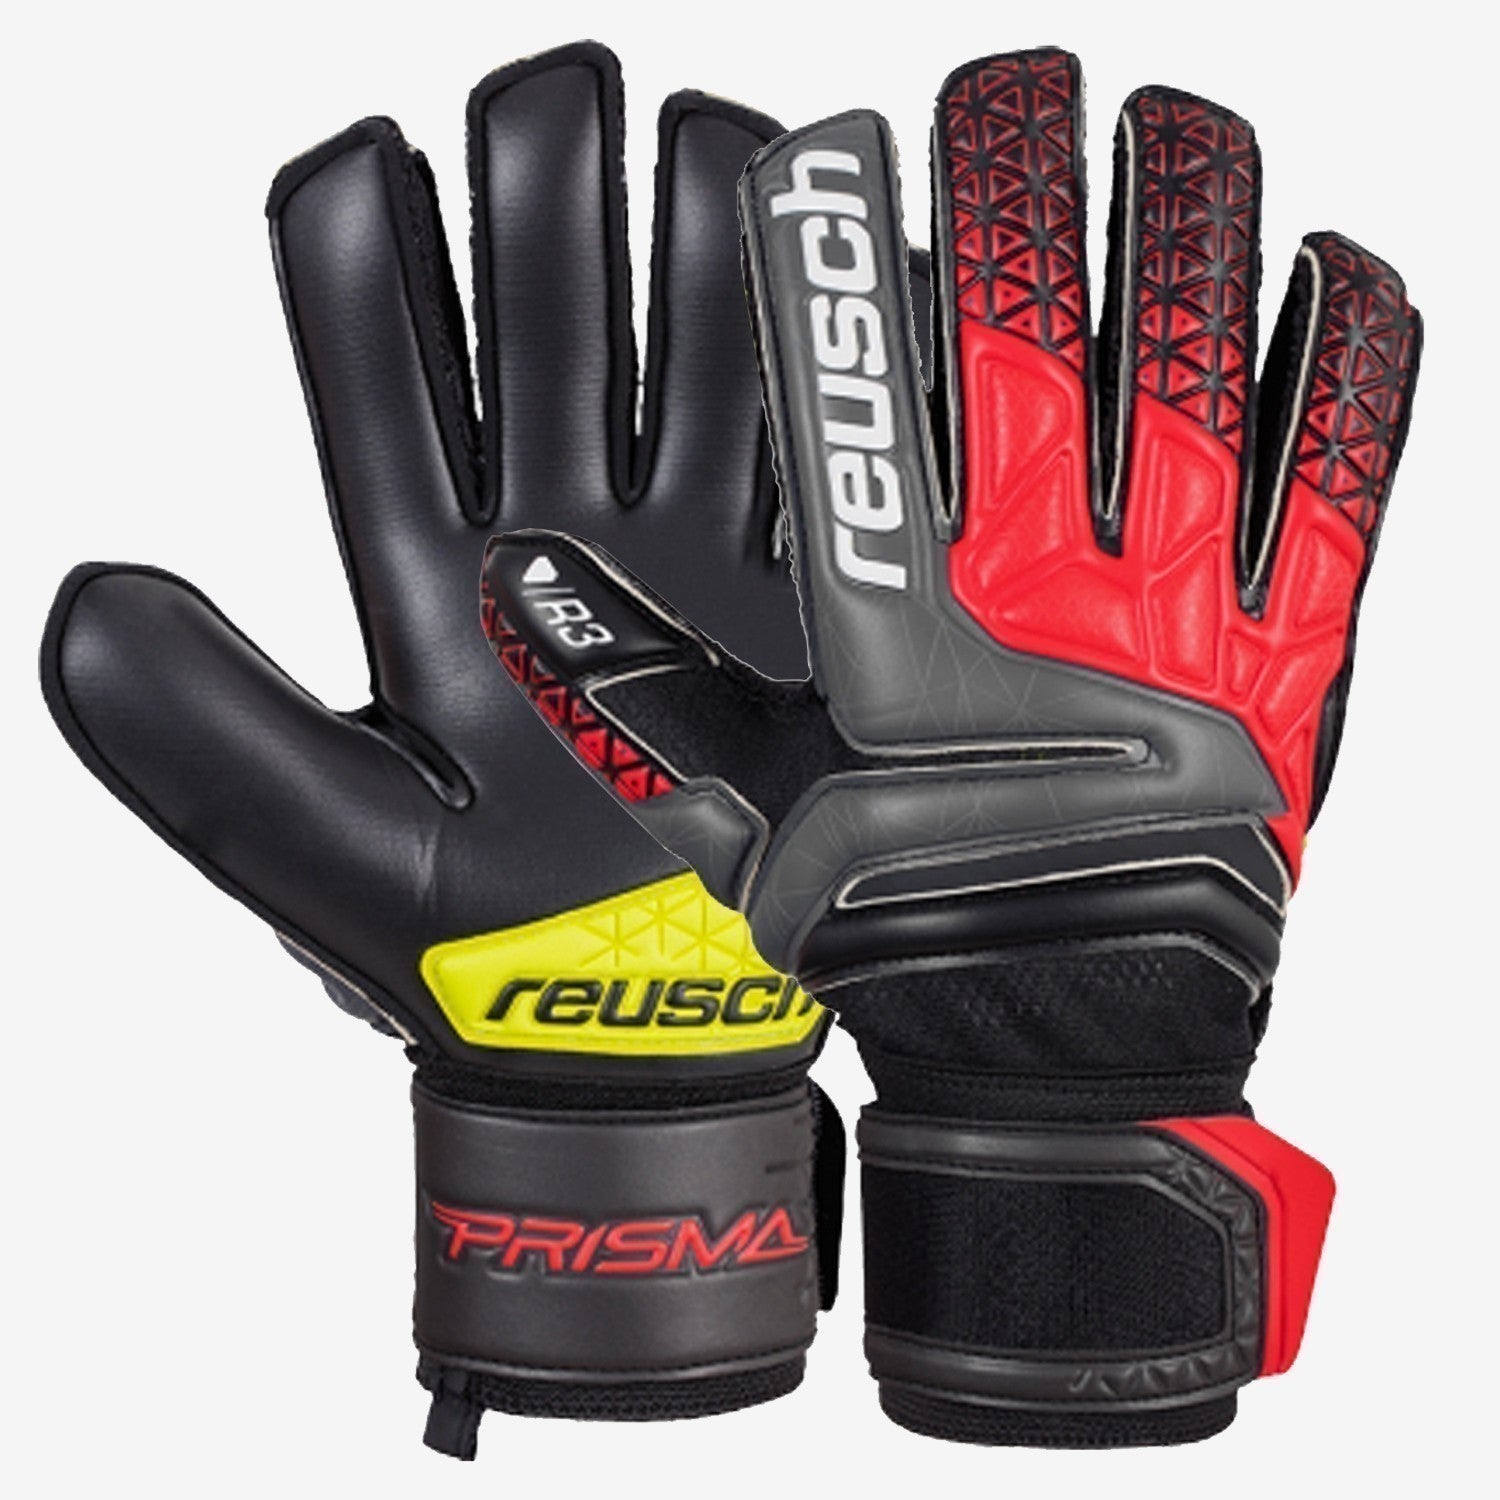 Prisma Prime R3 Finger Support - Black/Fire Red/Black